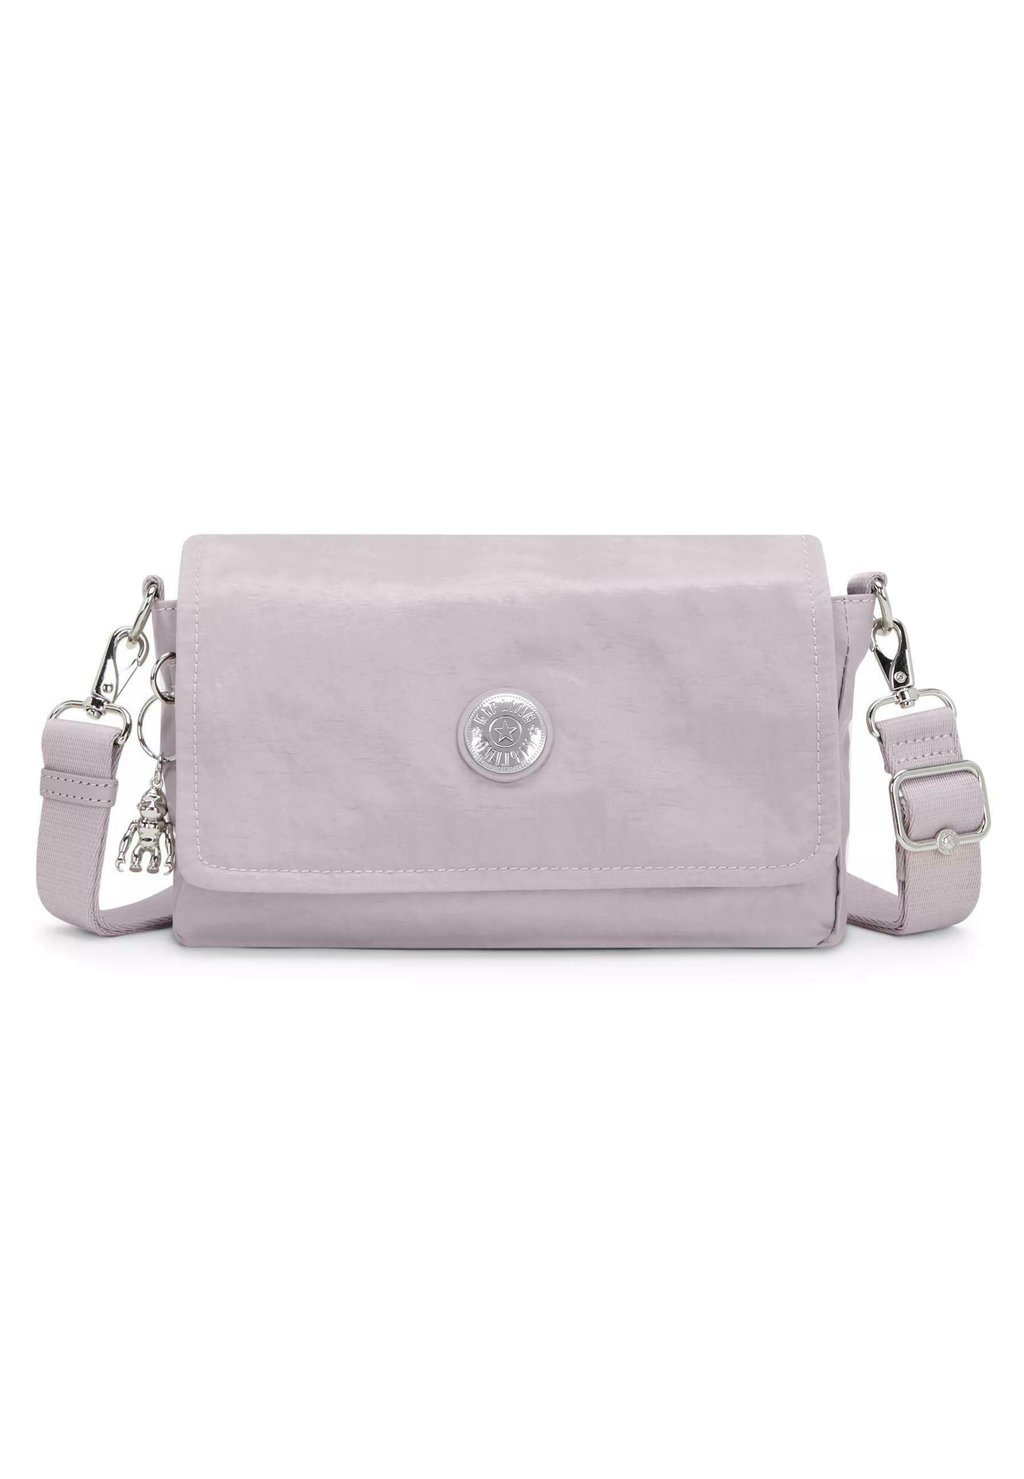 Сумка через плечо ARAS Kipling, цвет gleam silver сумка через плечо aras kipling цвет valentine pink